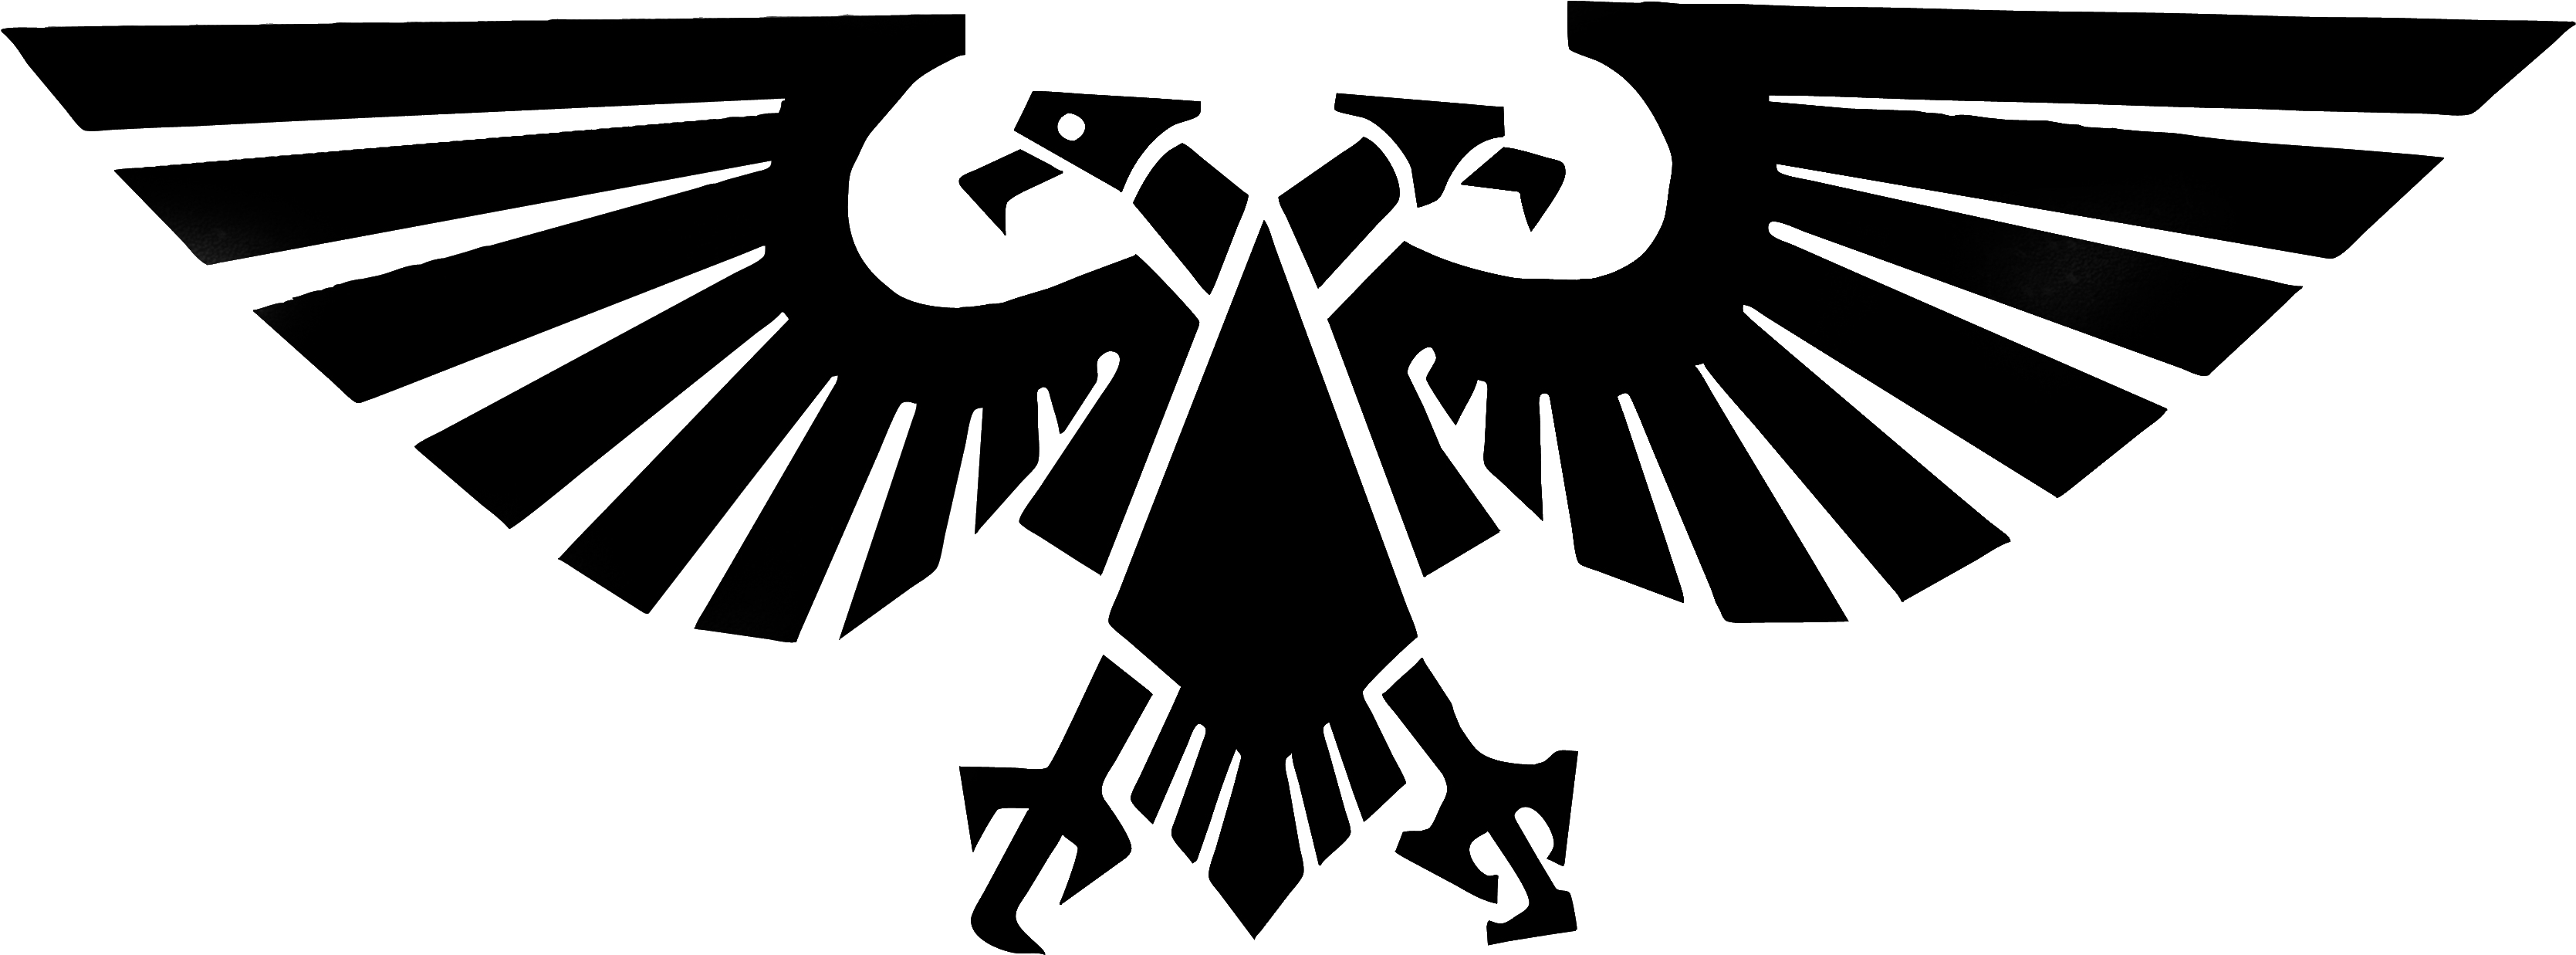 imperium of man logo
